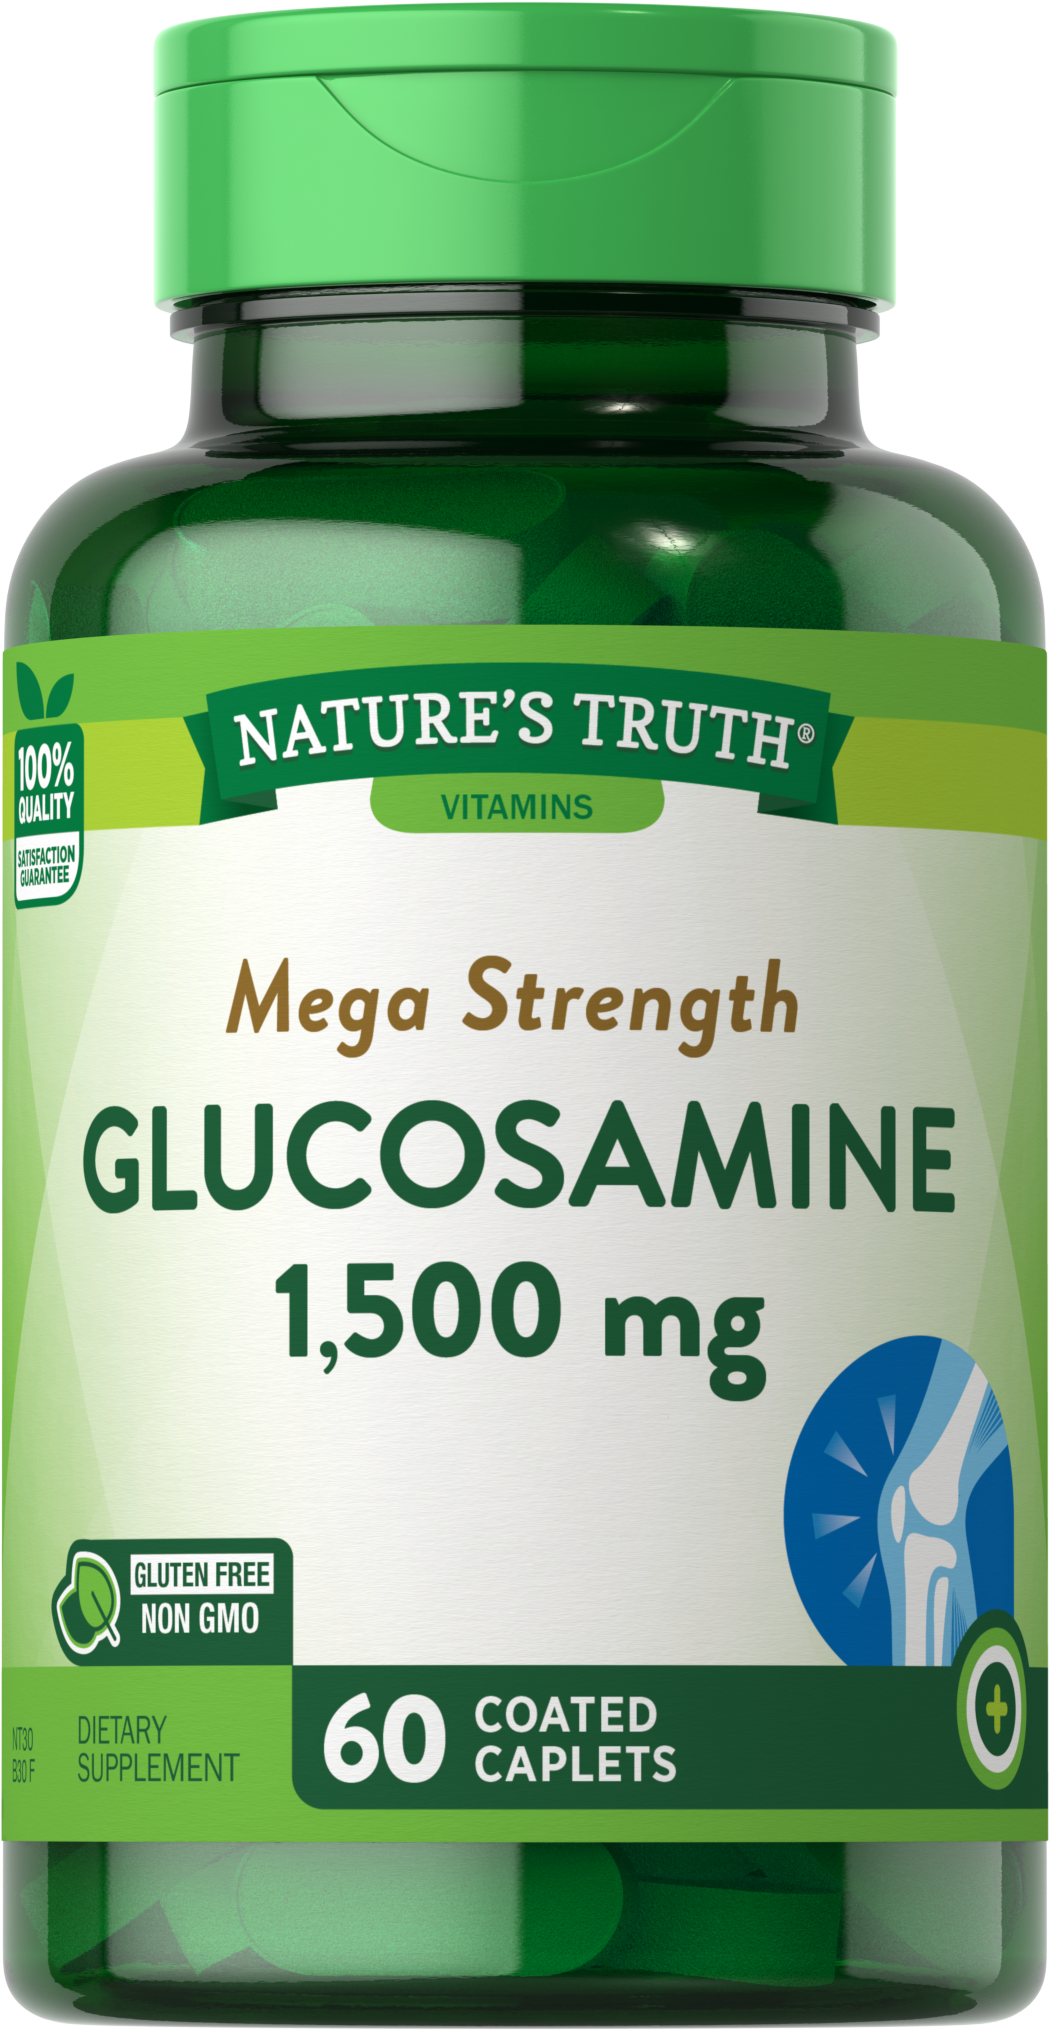 Glucosamine Sulfate 1500 mg